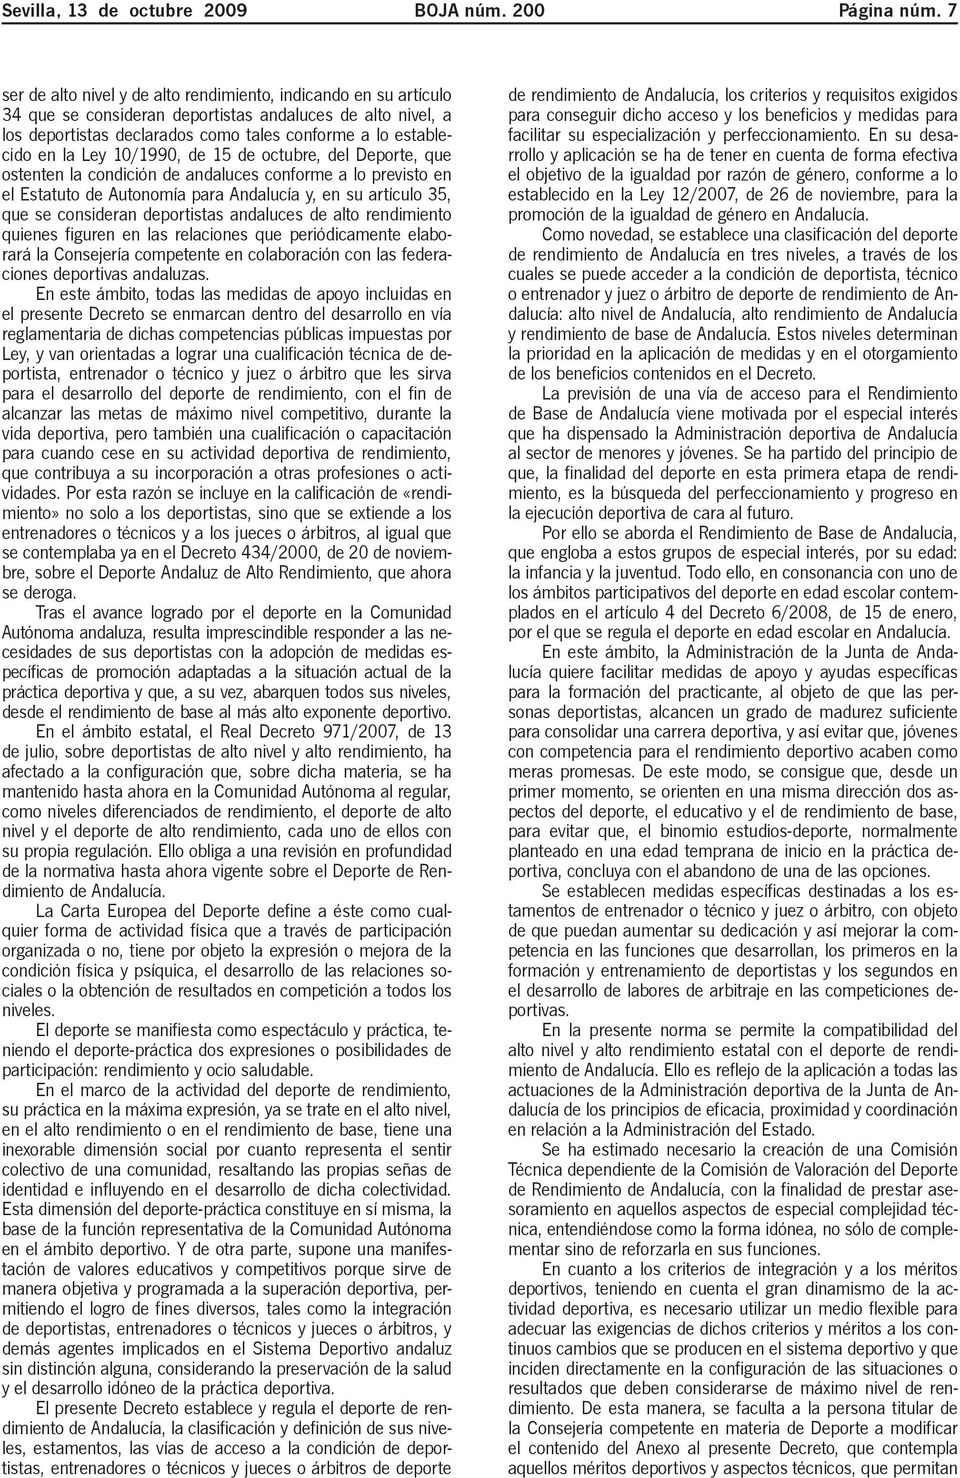 Ley 10/1990, de 15 de octubre, del Deporte, que ostenten la condición de andaluces conforme a lo previsto en el Estatuto de Autonomía para Andalucía y, en su artículo 35, que se consideran